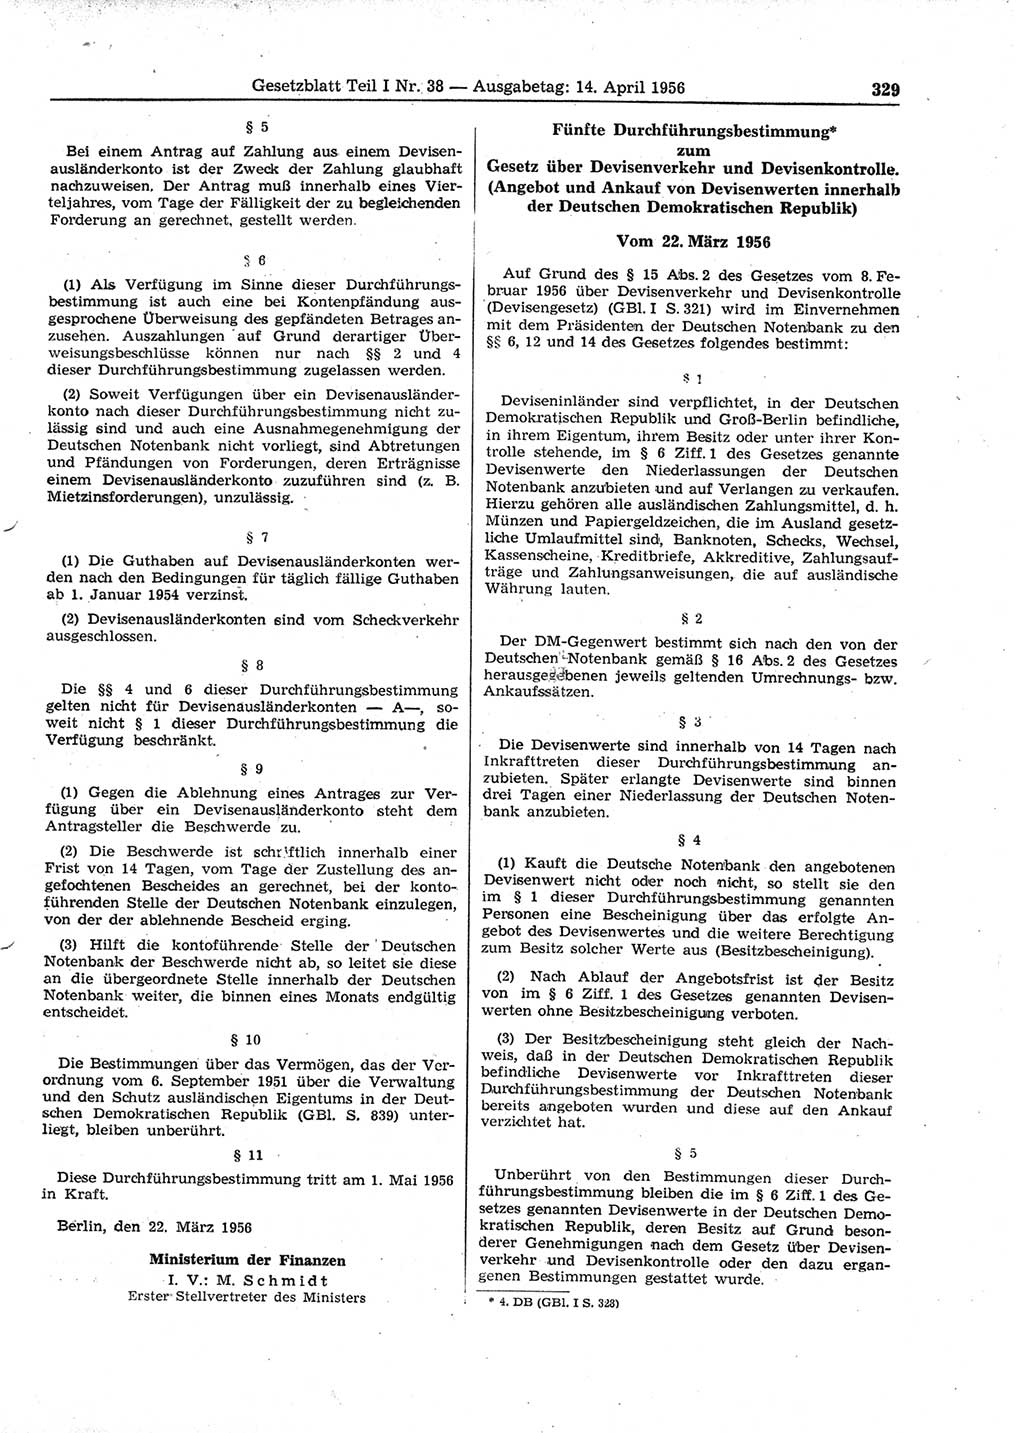 Gesetzblatt (GBl.) der Deutschen Demokratischen Republik (DDR) Teil â… 1956, Seite 329 (GBl. DDR â… 1956, S. 329)